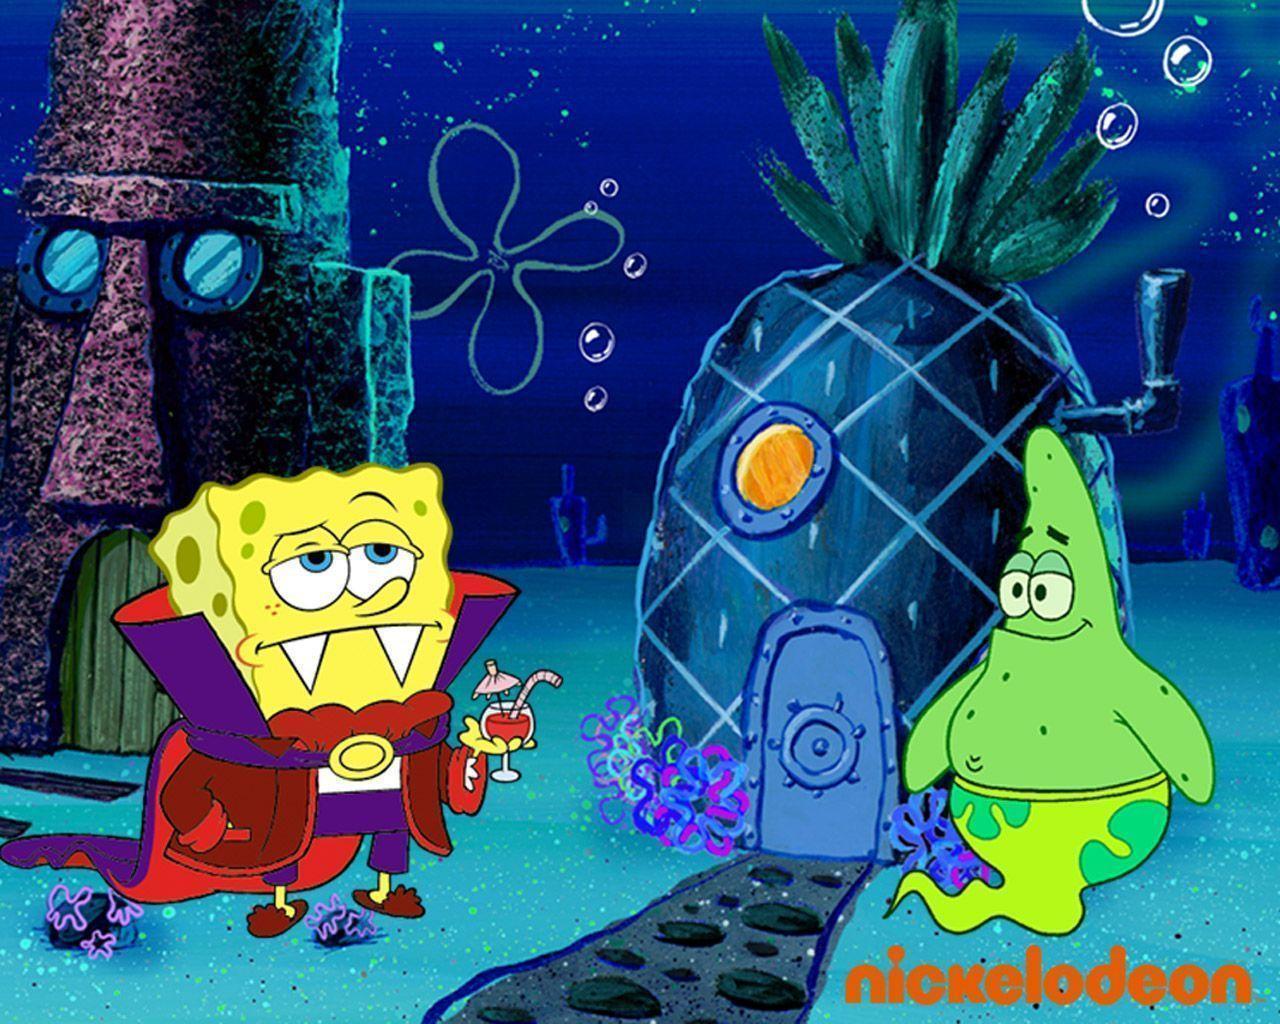 Spongebob & Patrick Squarepants Wallpaper 31312833